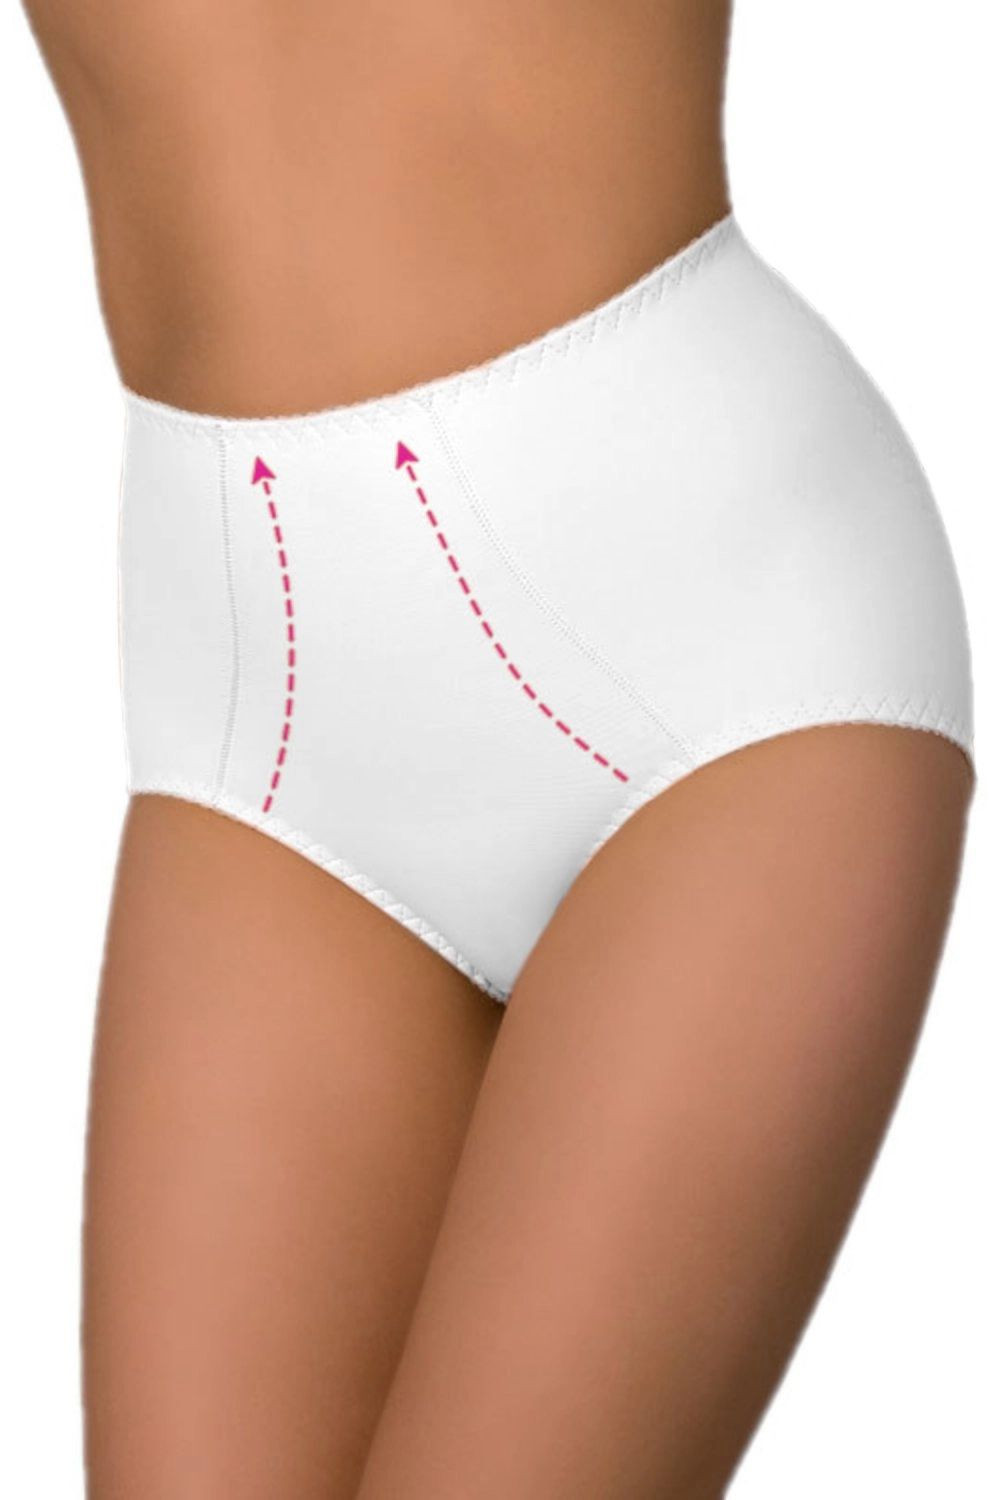 Stahovací kalhotky Verona white - ELDAR bílá XL